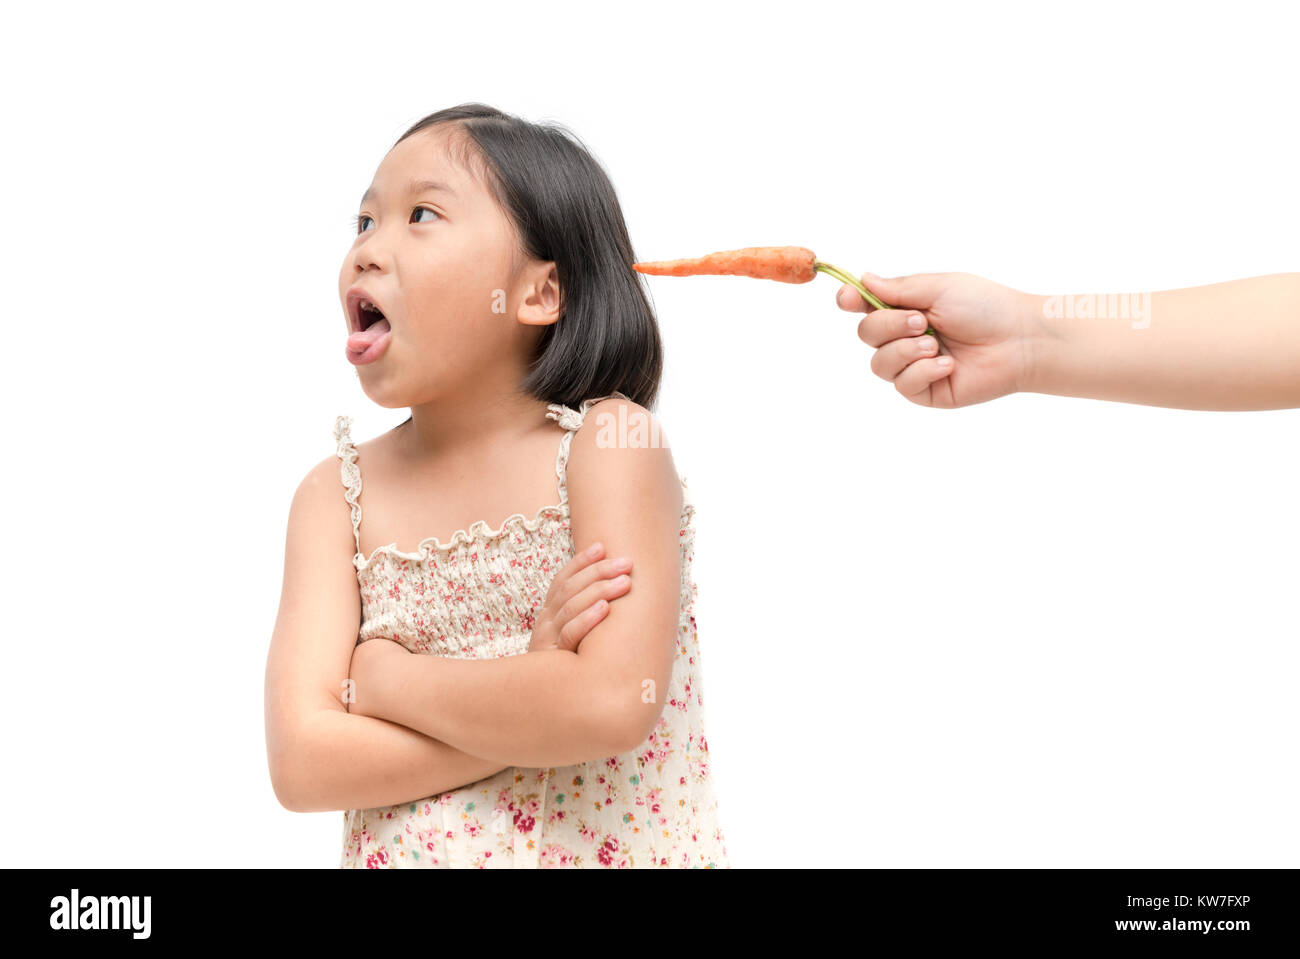 Asiatische kind Mädchen mit Ausdruck der Abneigung gegen Gemüse auf weißem Hintergrund, Ablehnen, essen Konzept Stockfoto